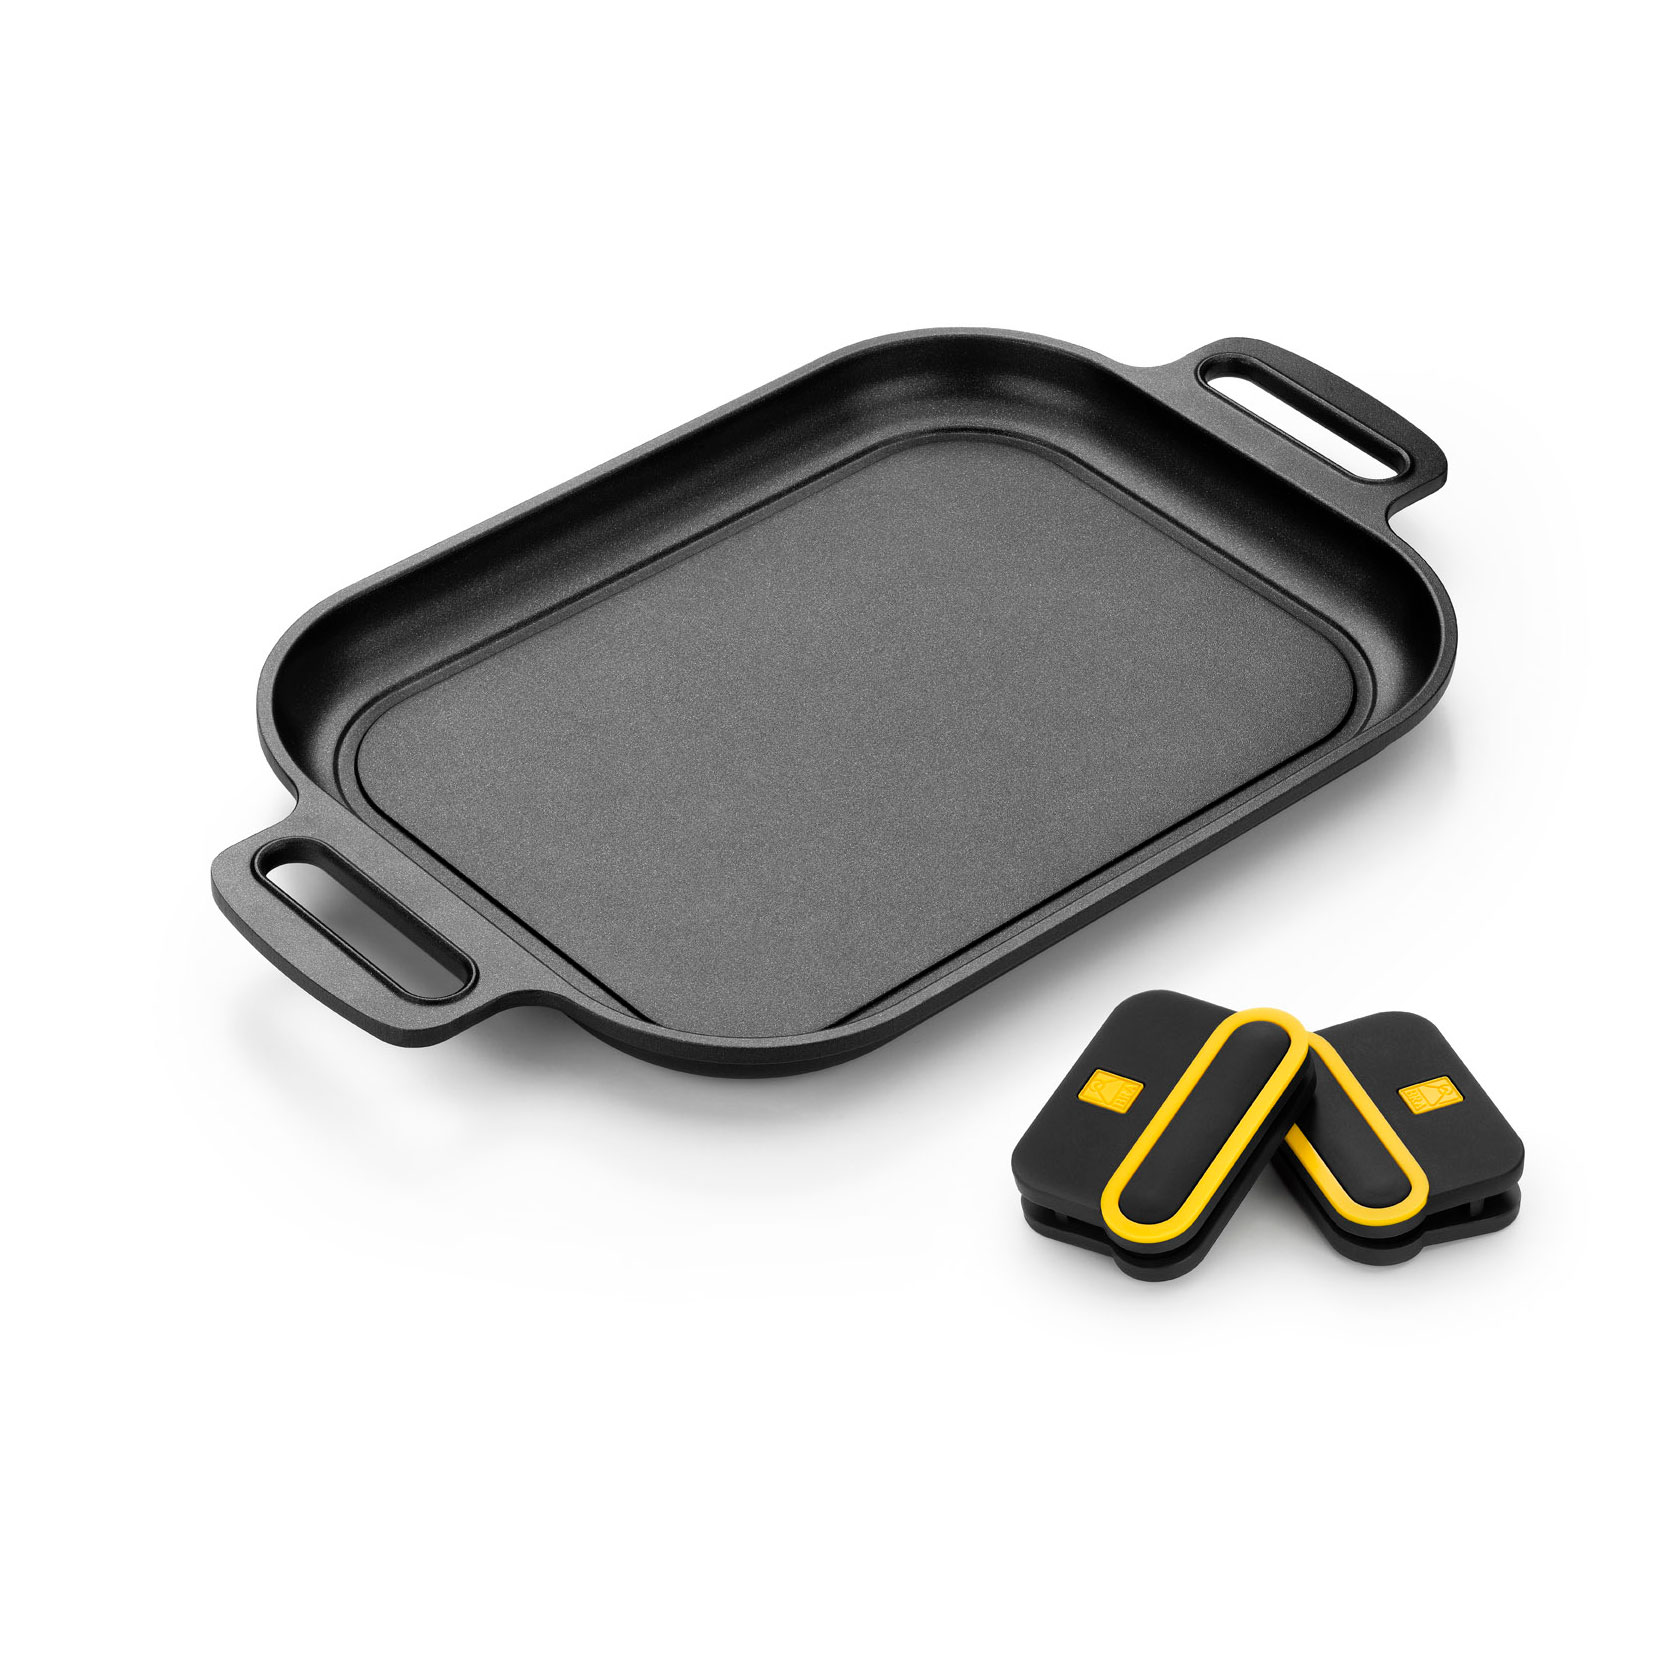 Flat grill pan - BRA